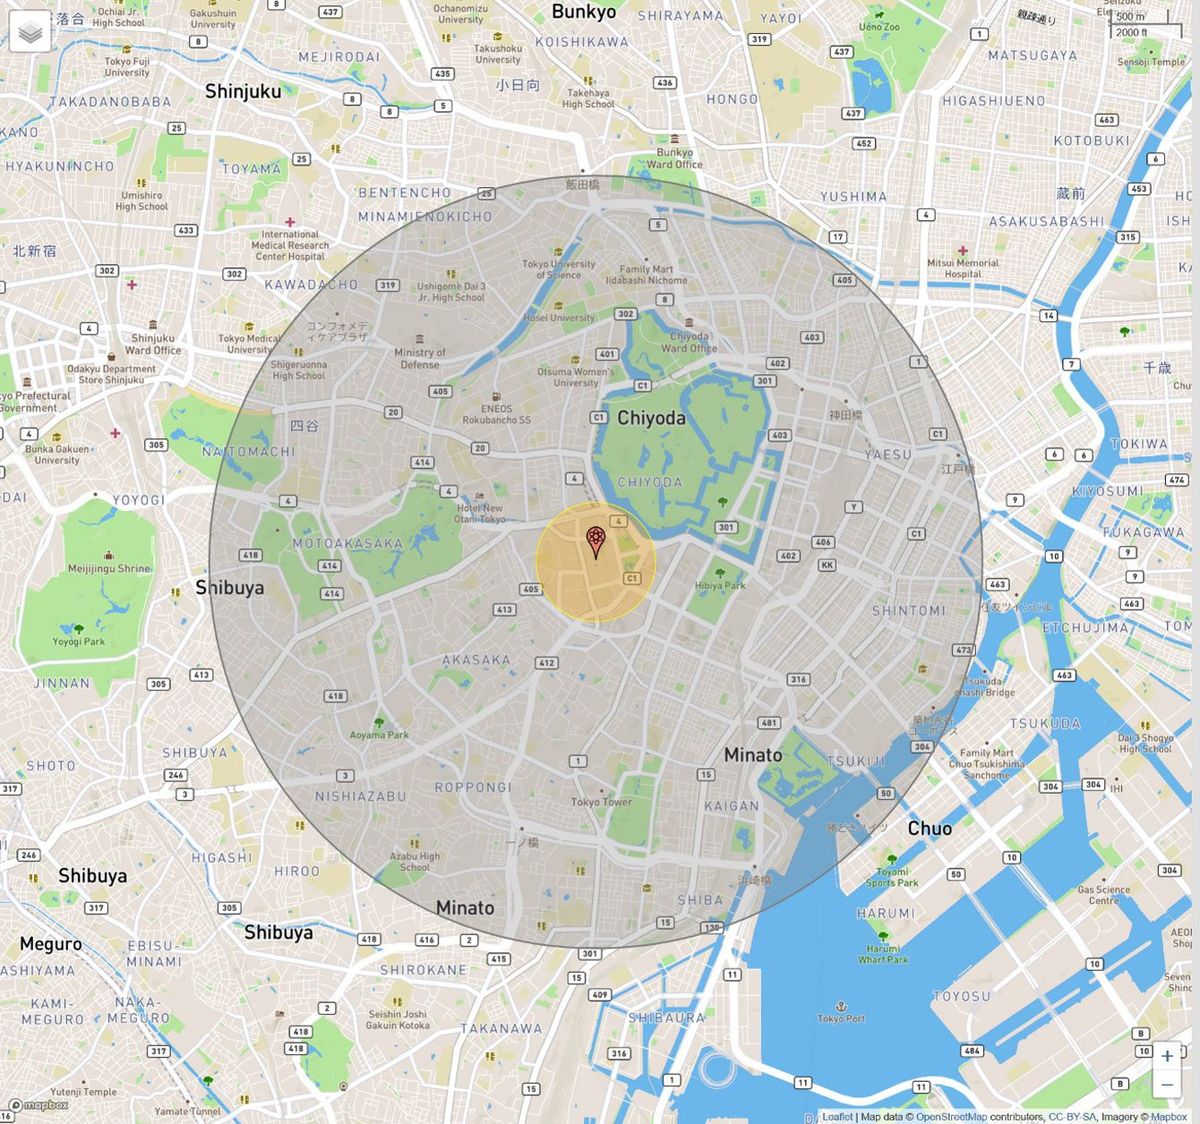 爆心地から半径3.27kmのシミュレーションマップ